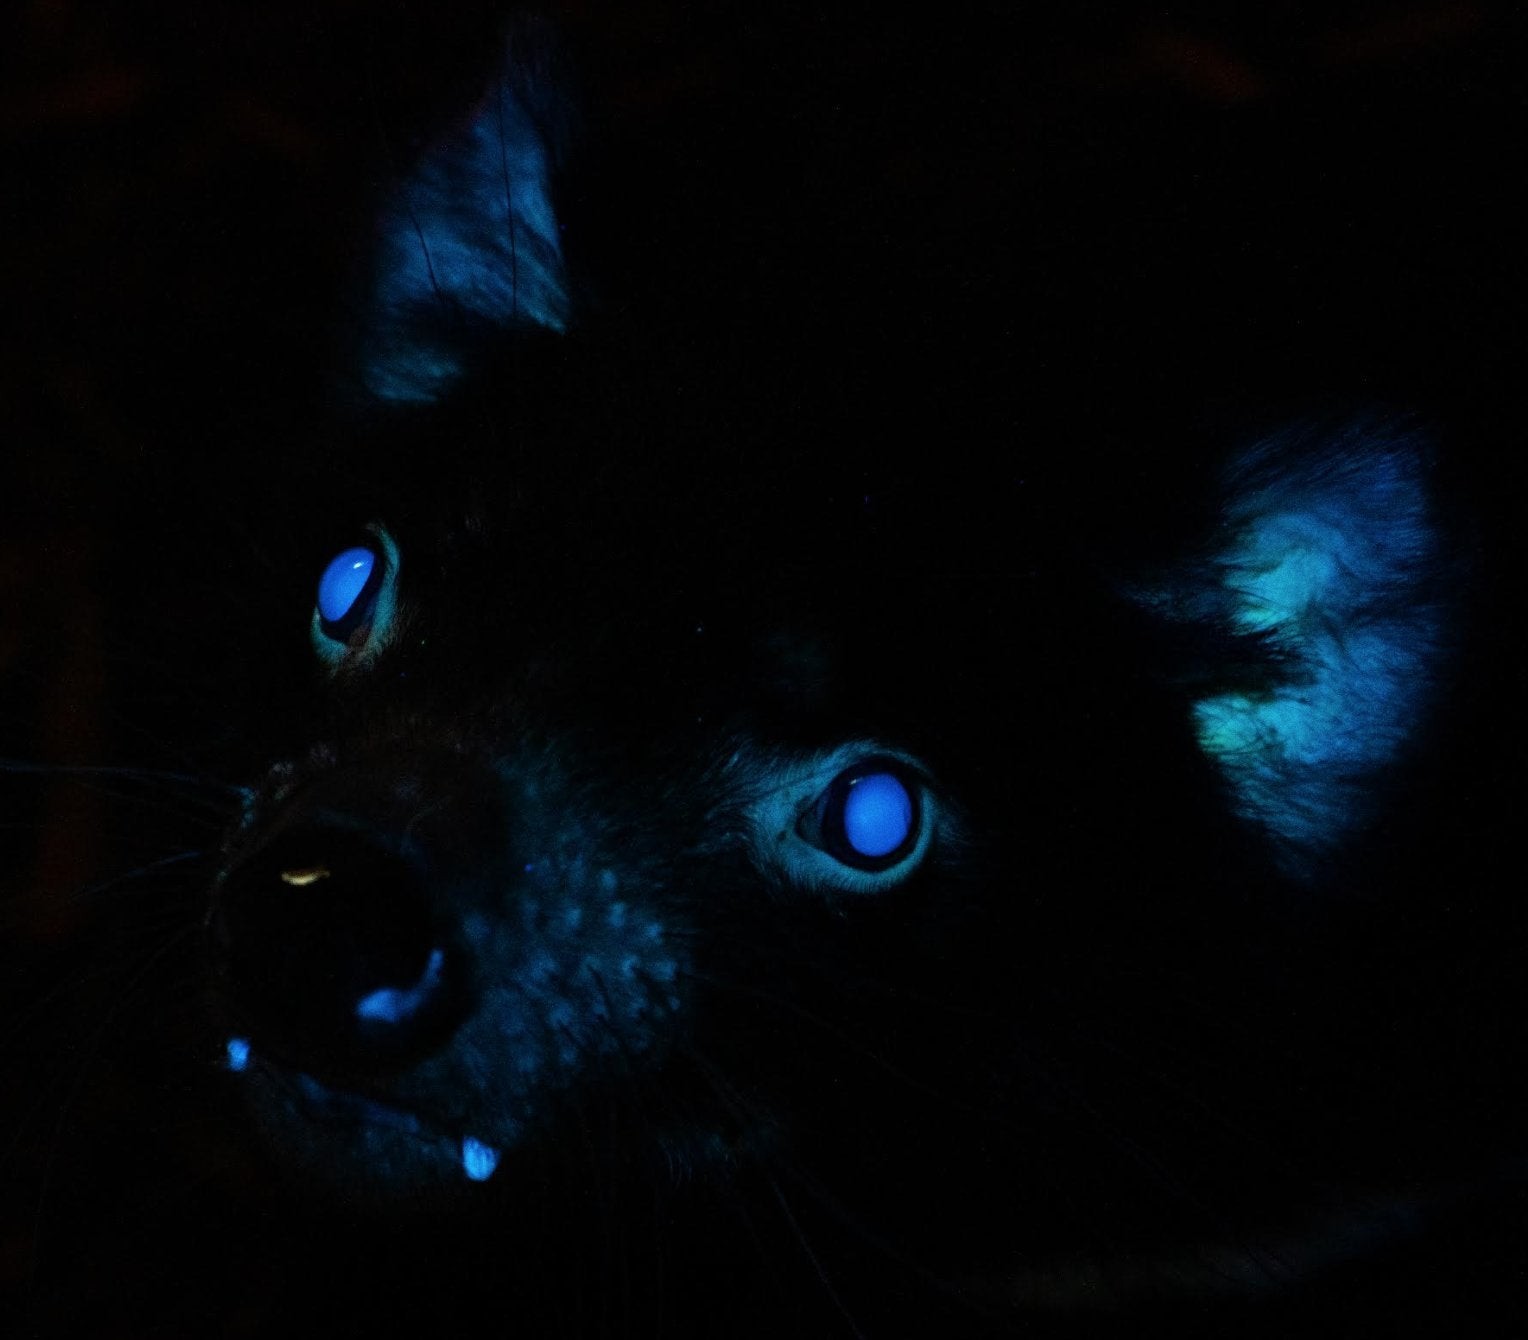 фанфик глаза пантеры светятся в ночи фото 43